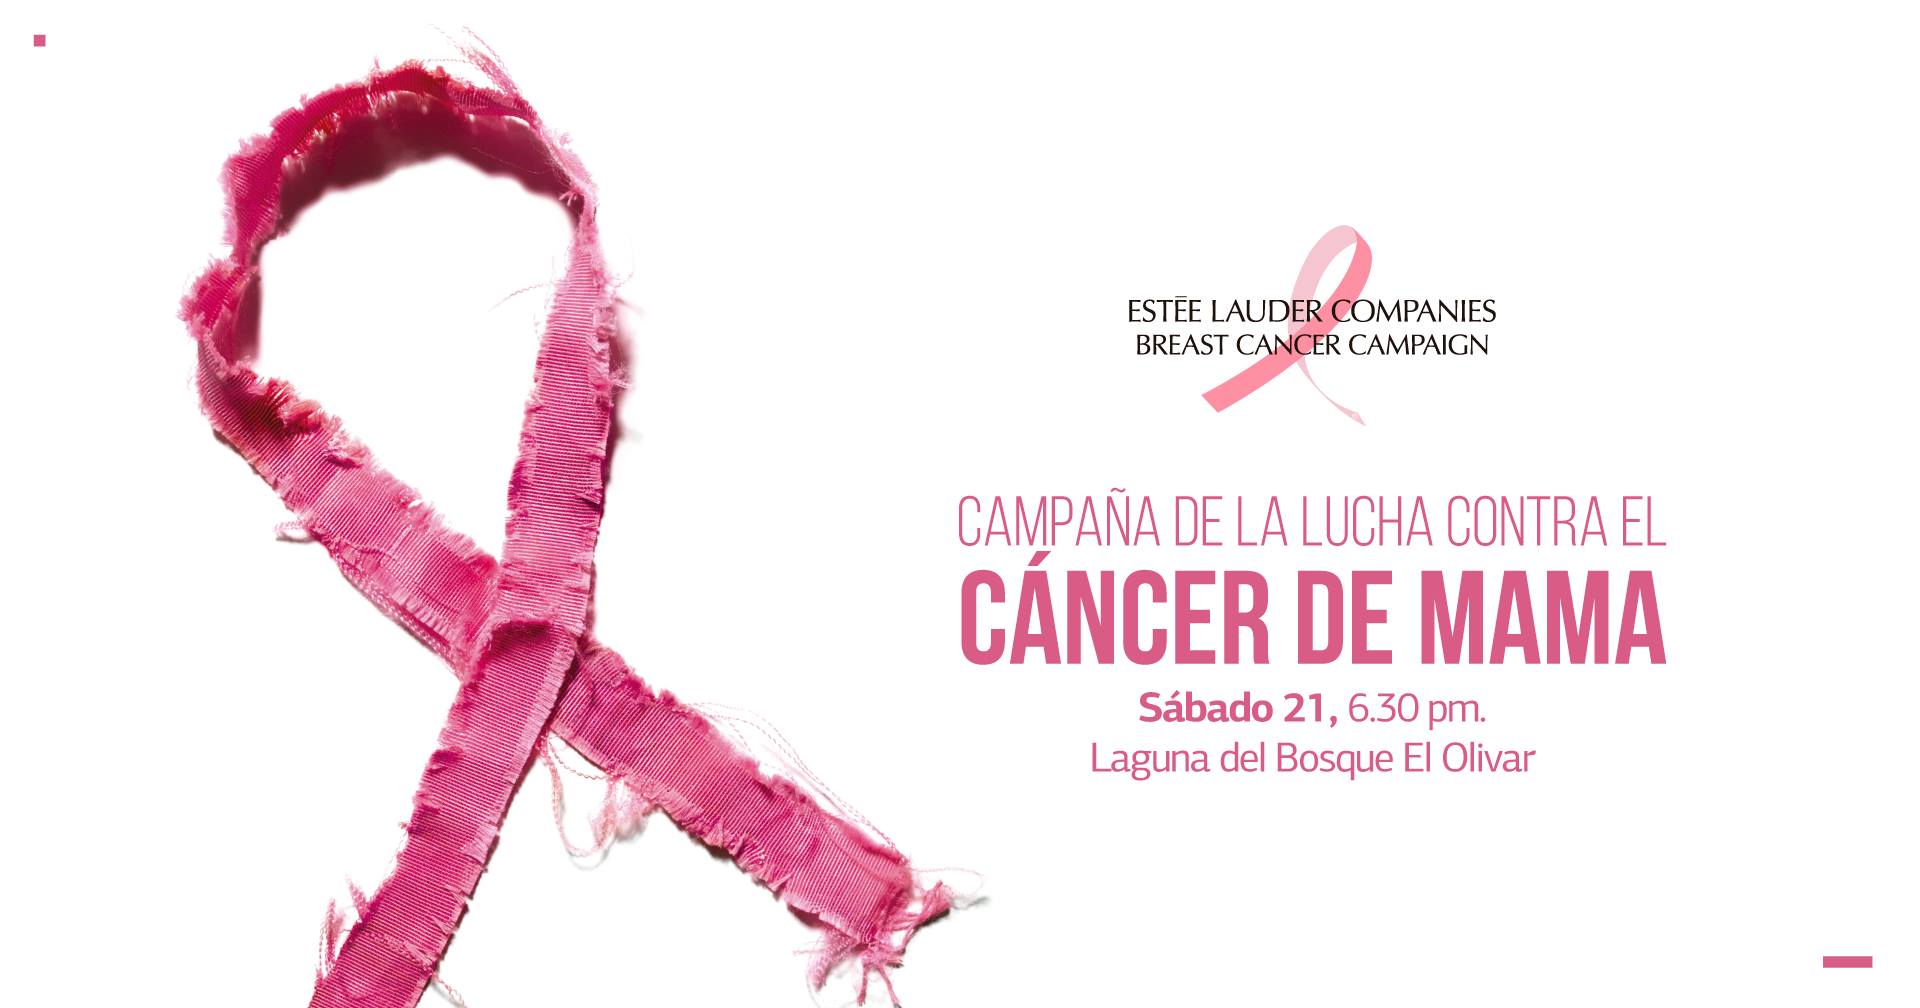 Campaña de lucha contra el cáncer de mama